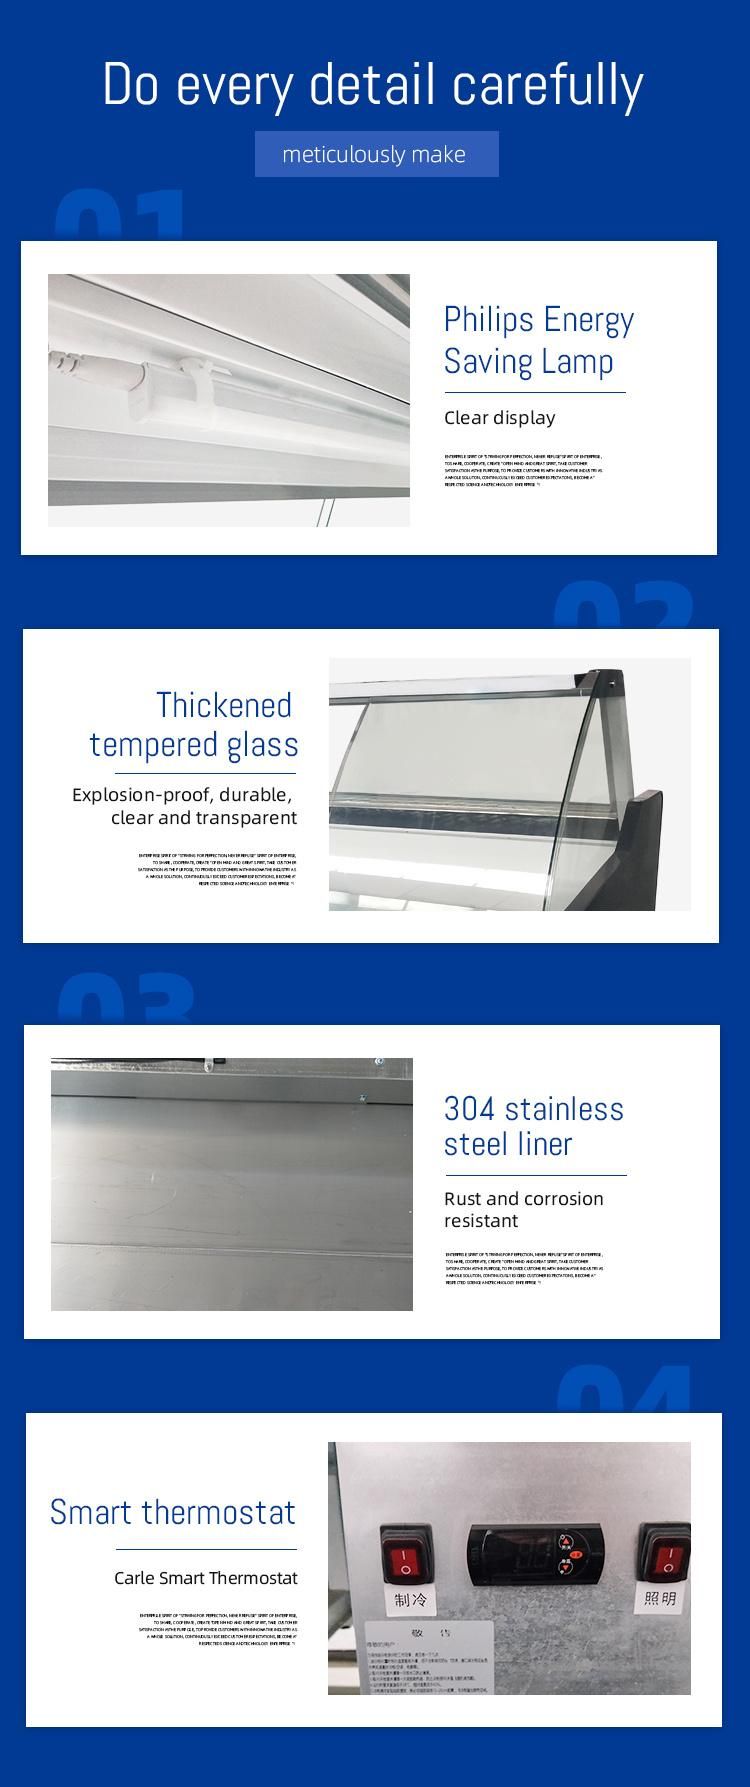 Top Quality Glass Door Deli Freezer Meat Display Showcase